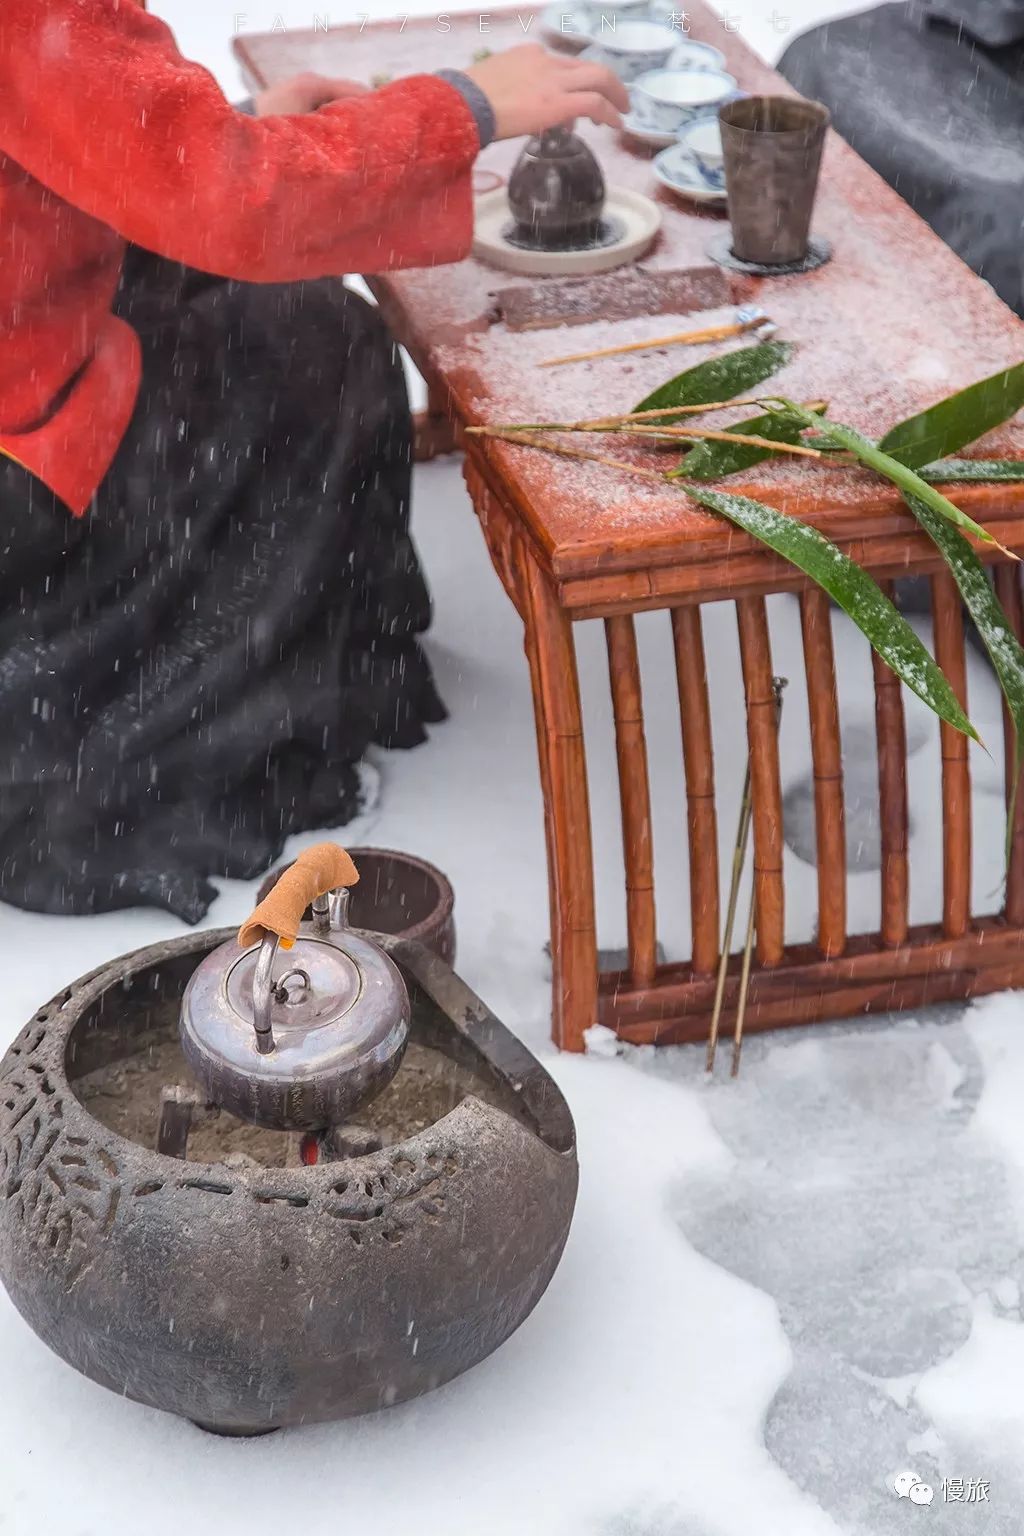 为了感受古人煮雪烹茶的体验,我们在佛学院开了个露天禅茶会